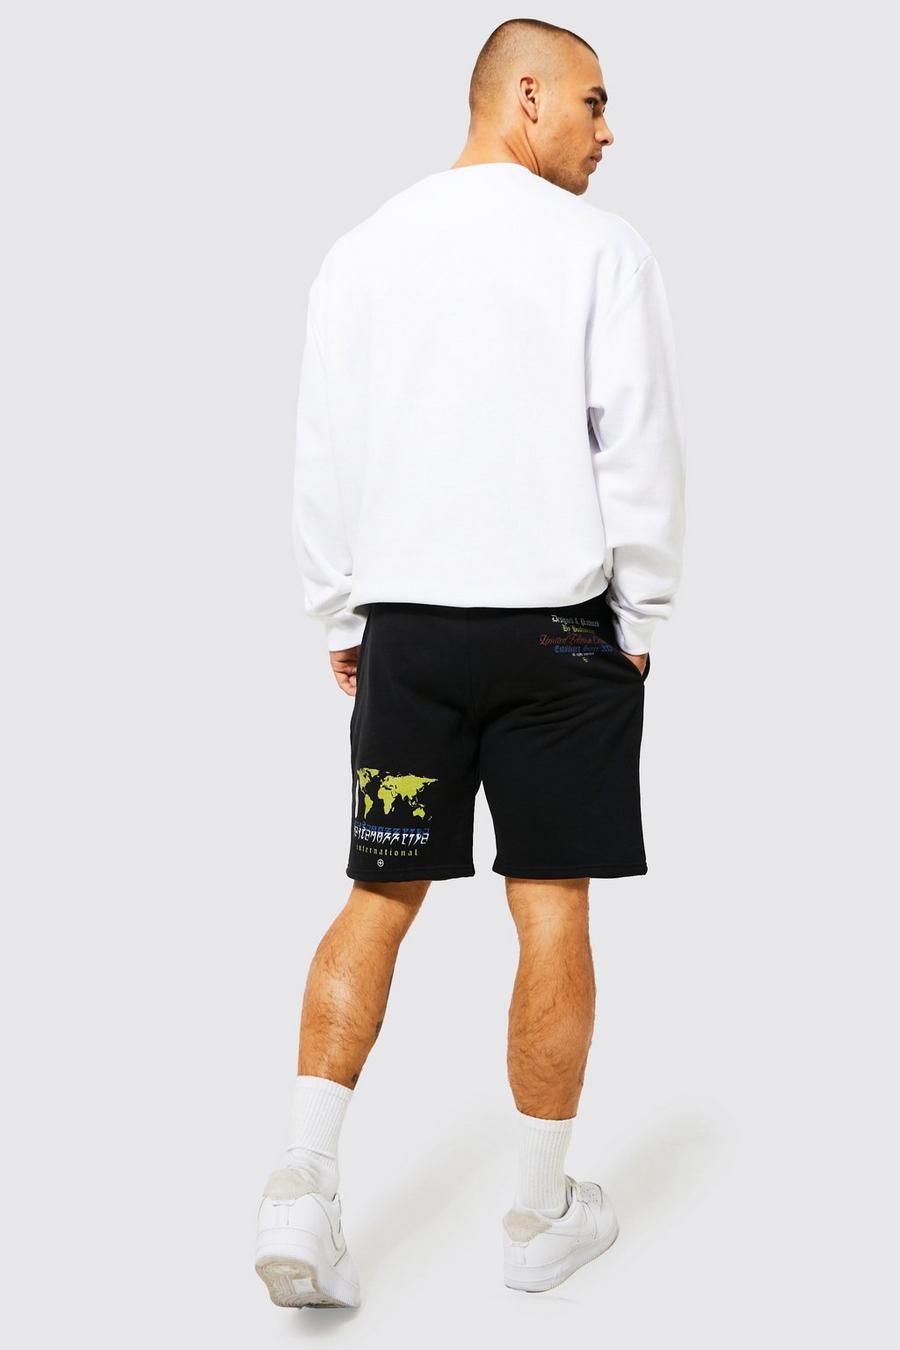 Pantaloncini Slim Fit in jersey con grafica di mappa, Black nero